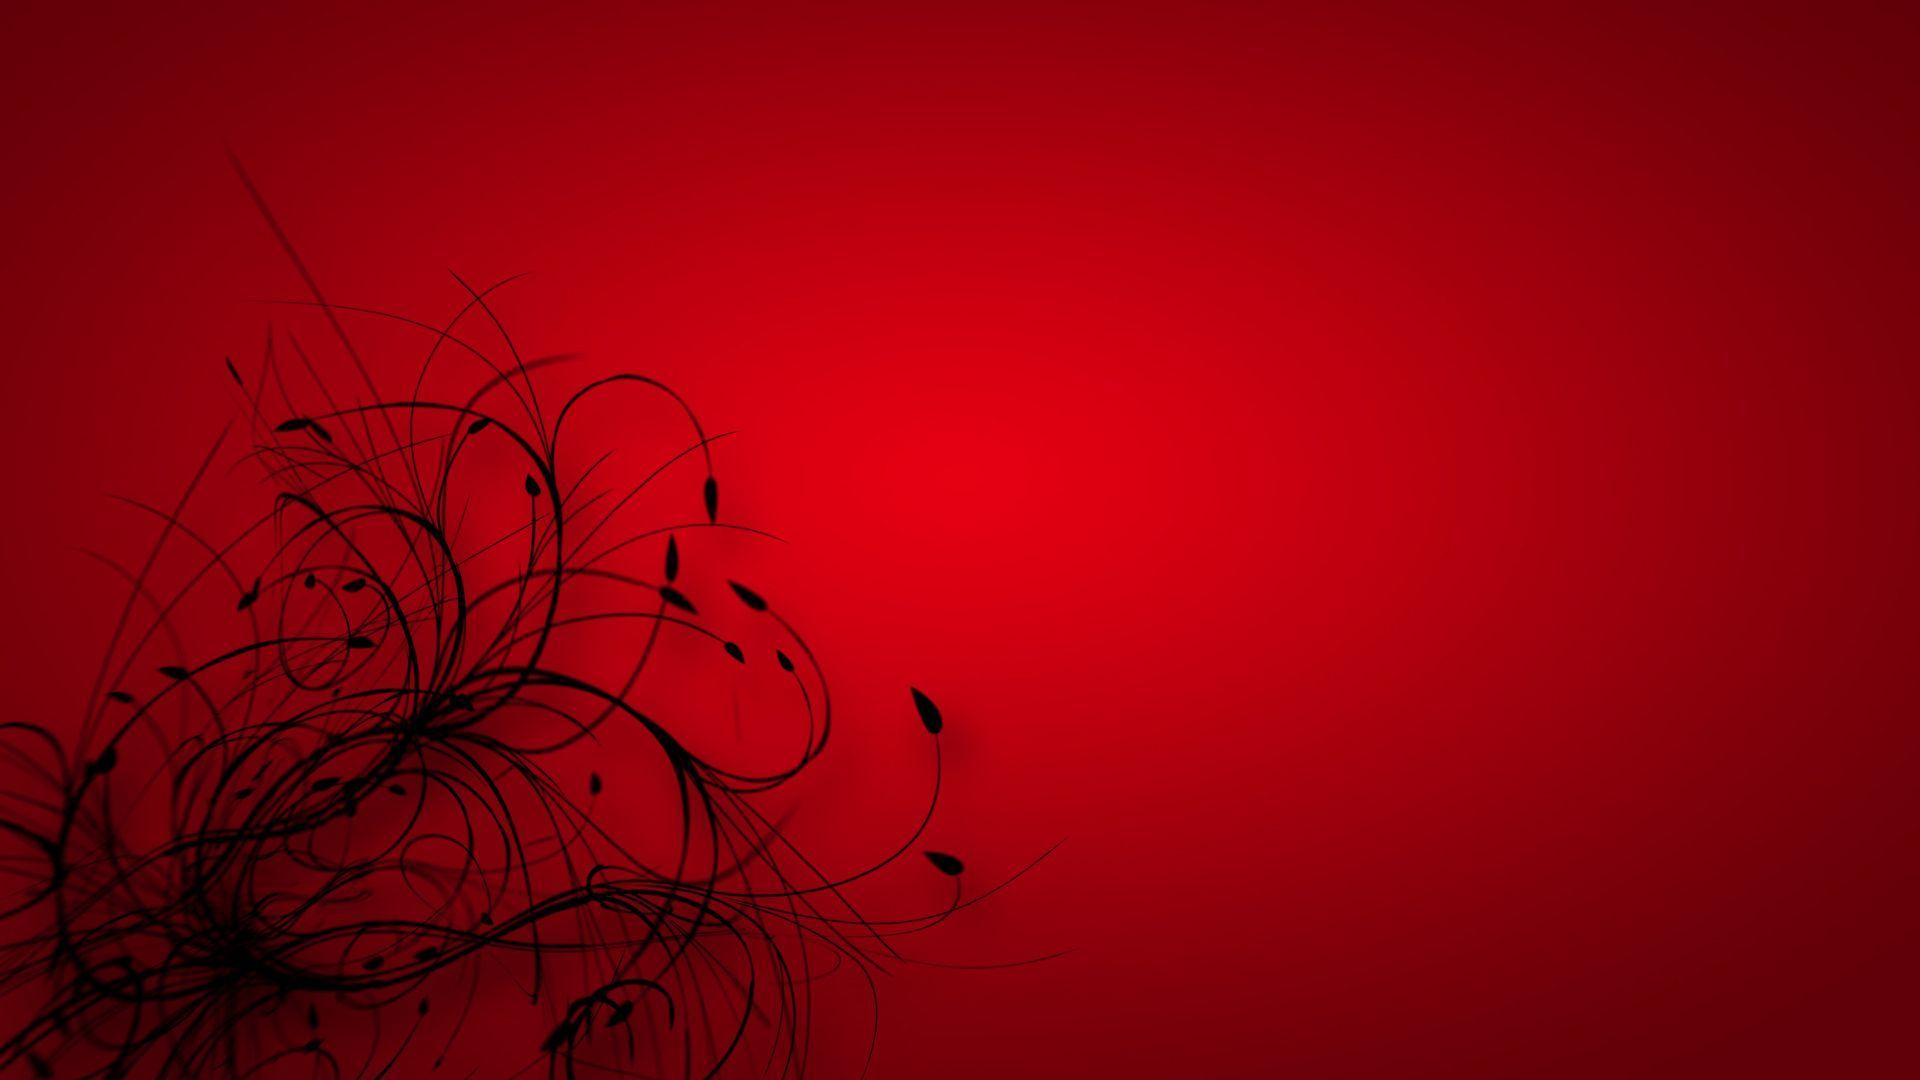 Red 3D Desktop Wallpaper, Red 3D Image, New Background